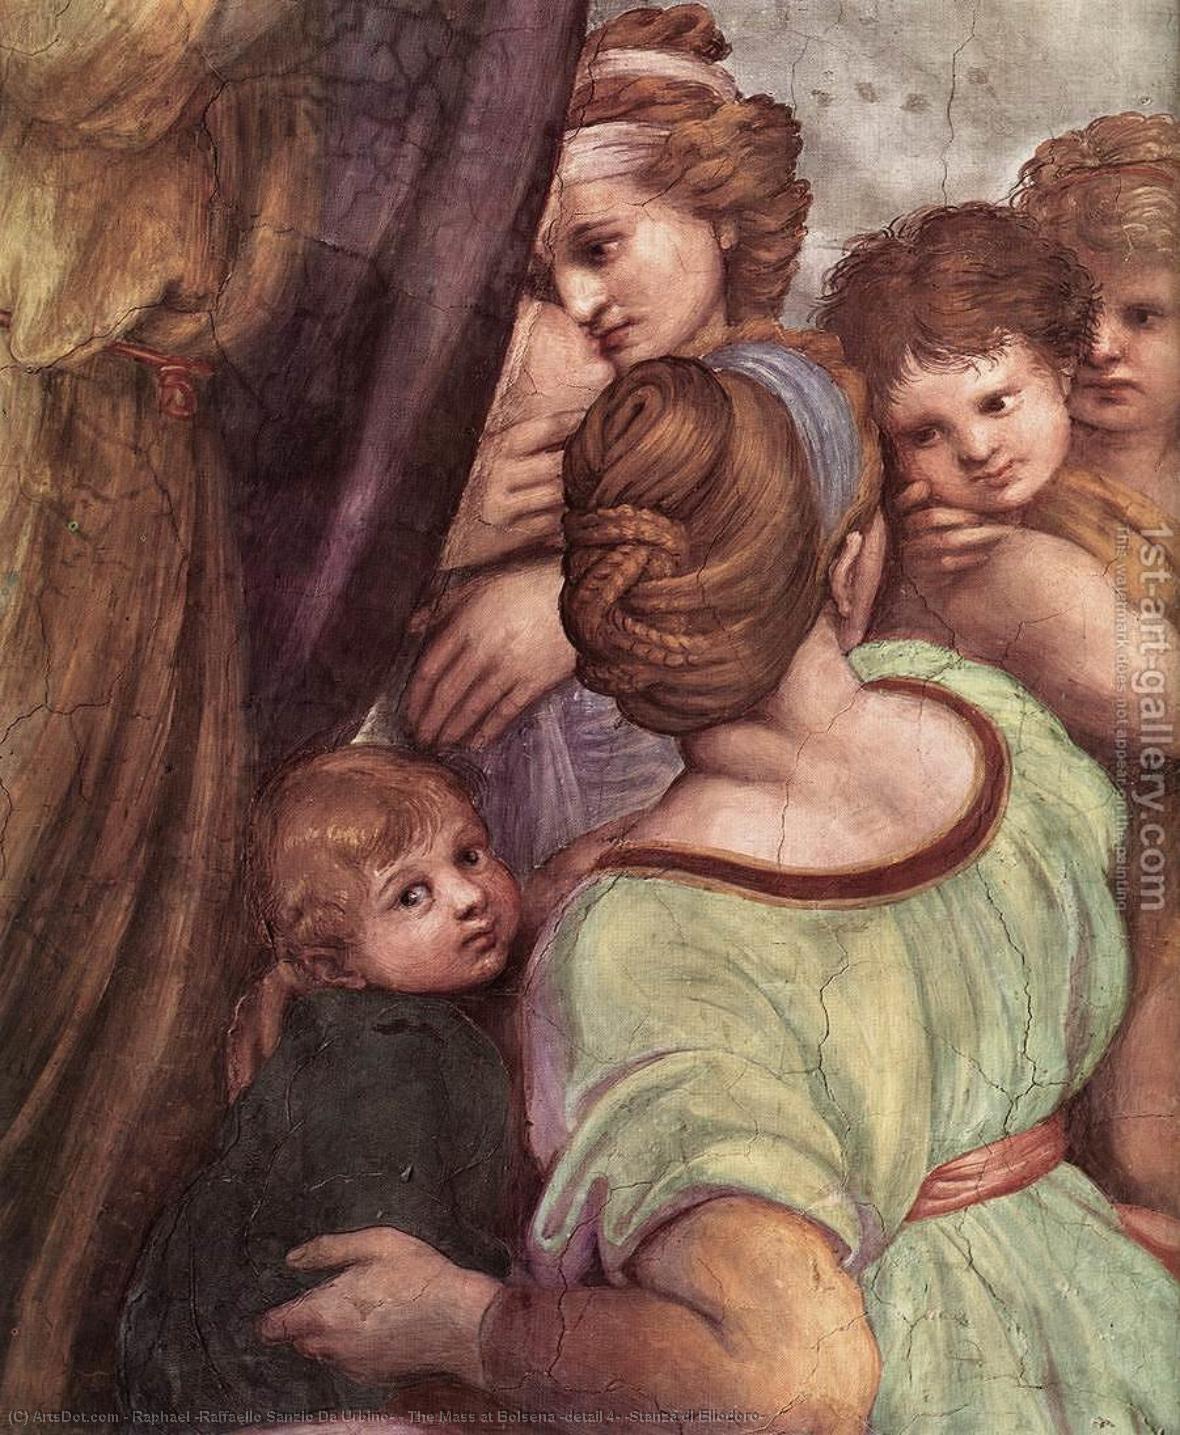 WikiOO.org - Encyclopedia of Fine Arts - Maleri, Artwork Raphael (Raffaello Sanzio Da Urbino) - The Mass at Bolsena (detail 4) (Stanza di Eliodoro)